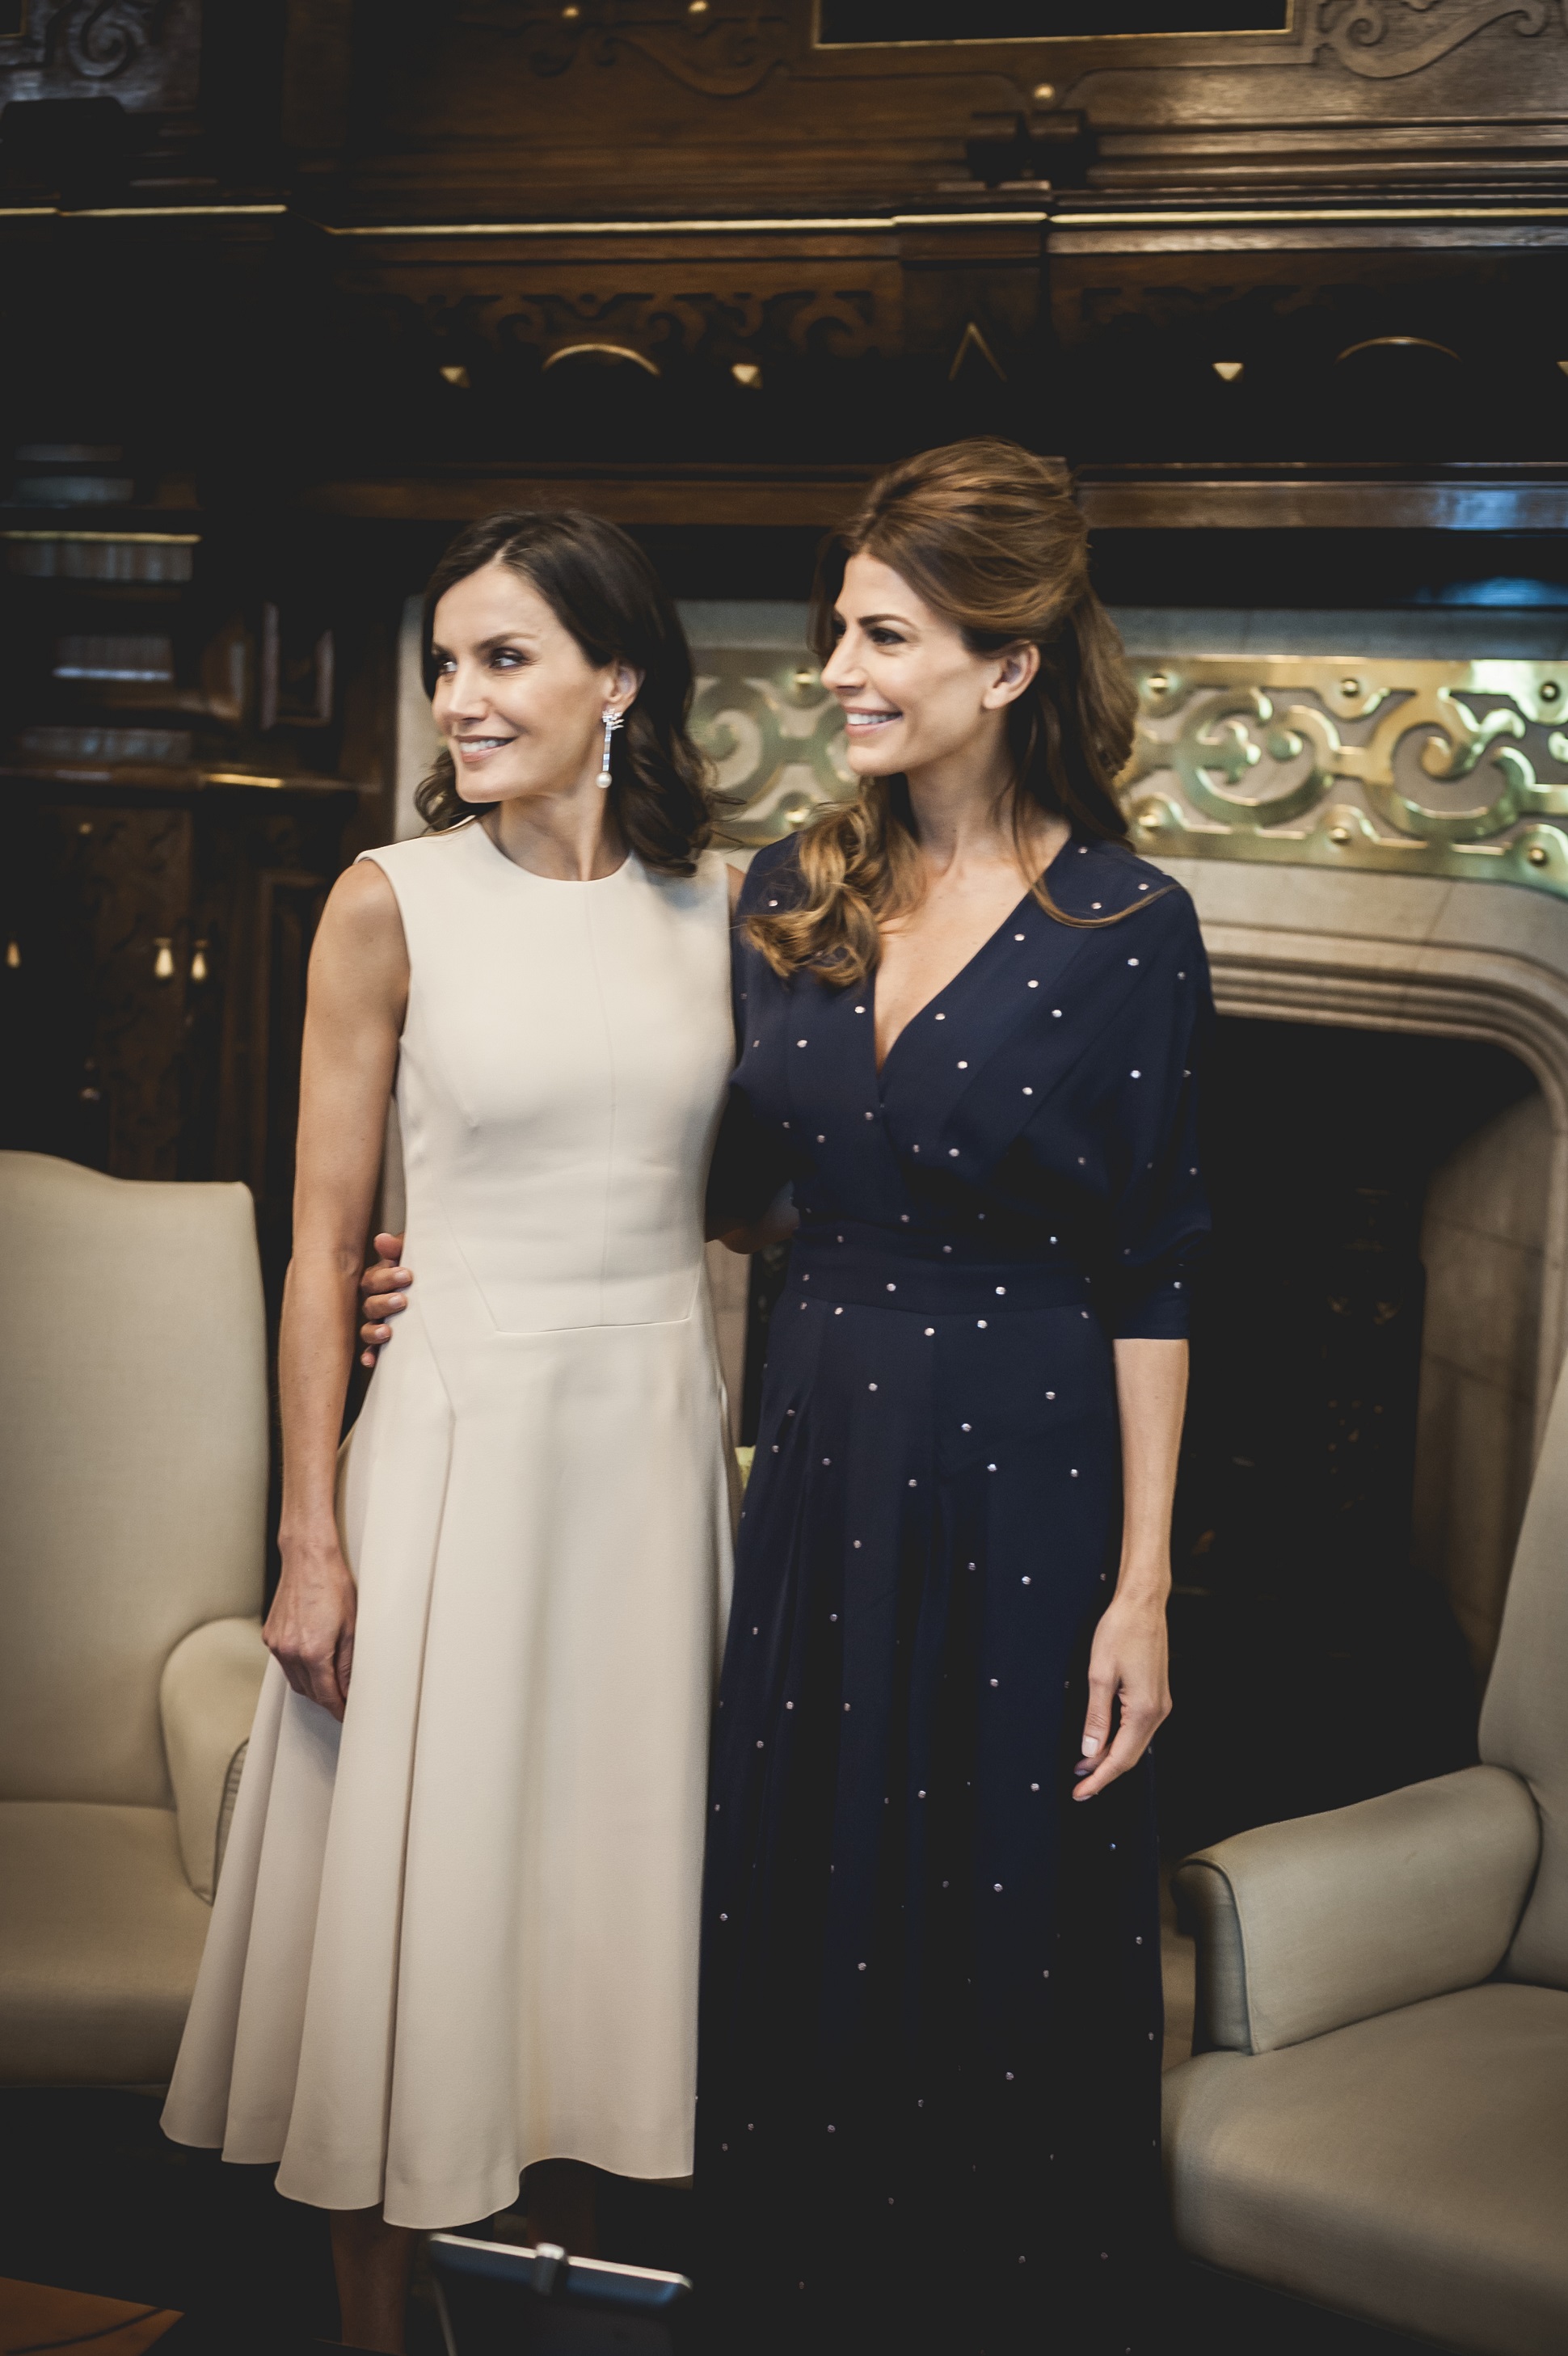 Juliana Awada y la Reina Letizia mantuvieron una reunión en la Casa Rosada